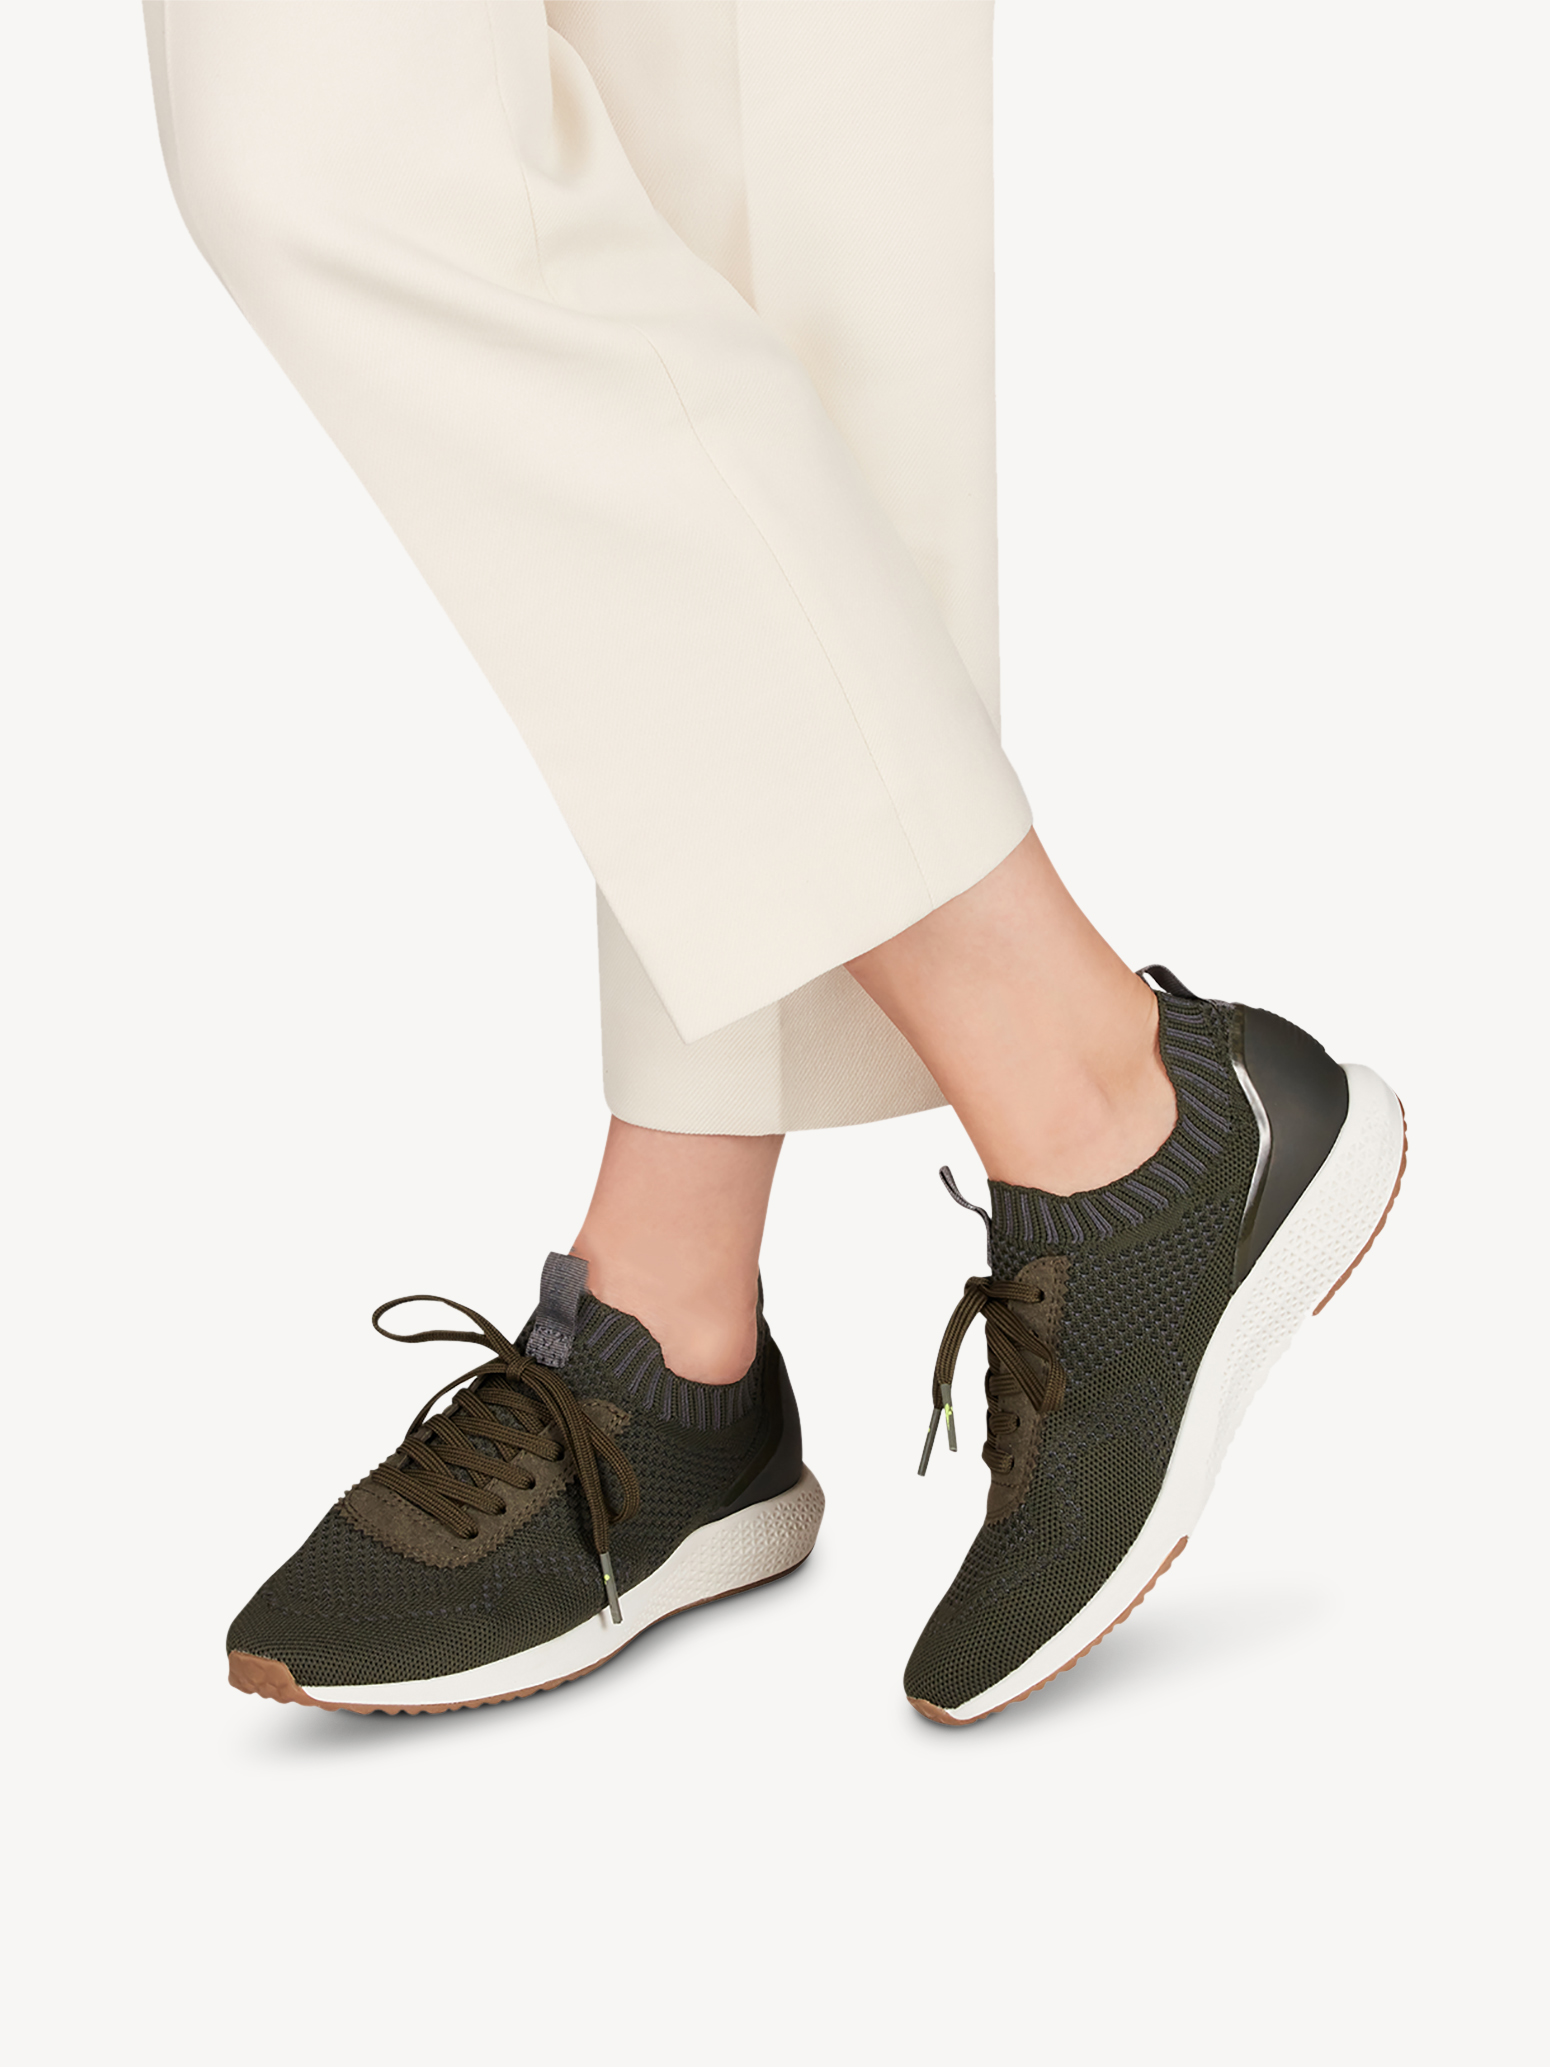 Ботинки на шнурках женские 5 AW20 (оливковый) - изображение №1